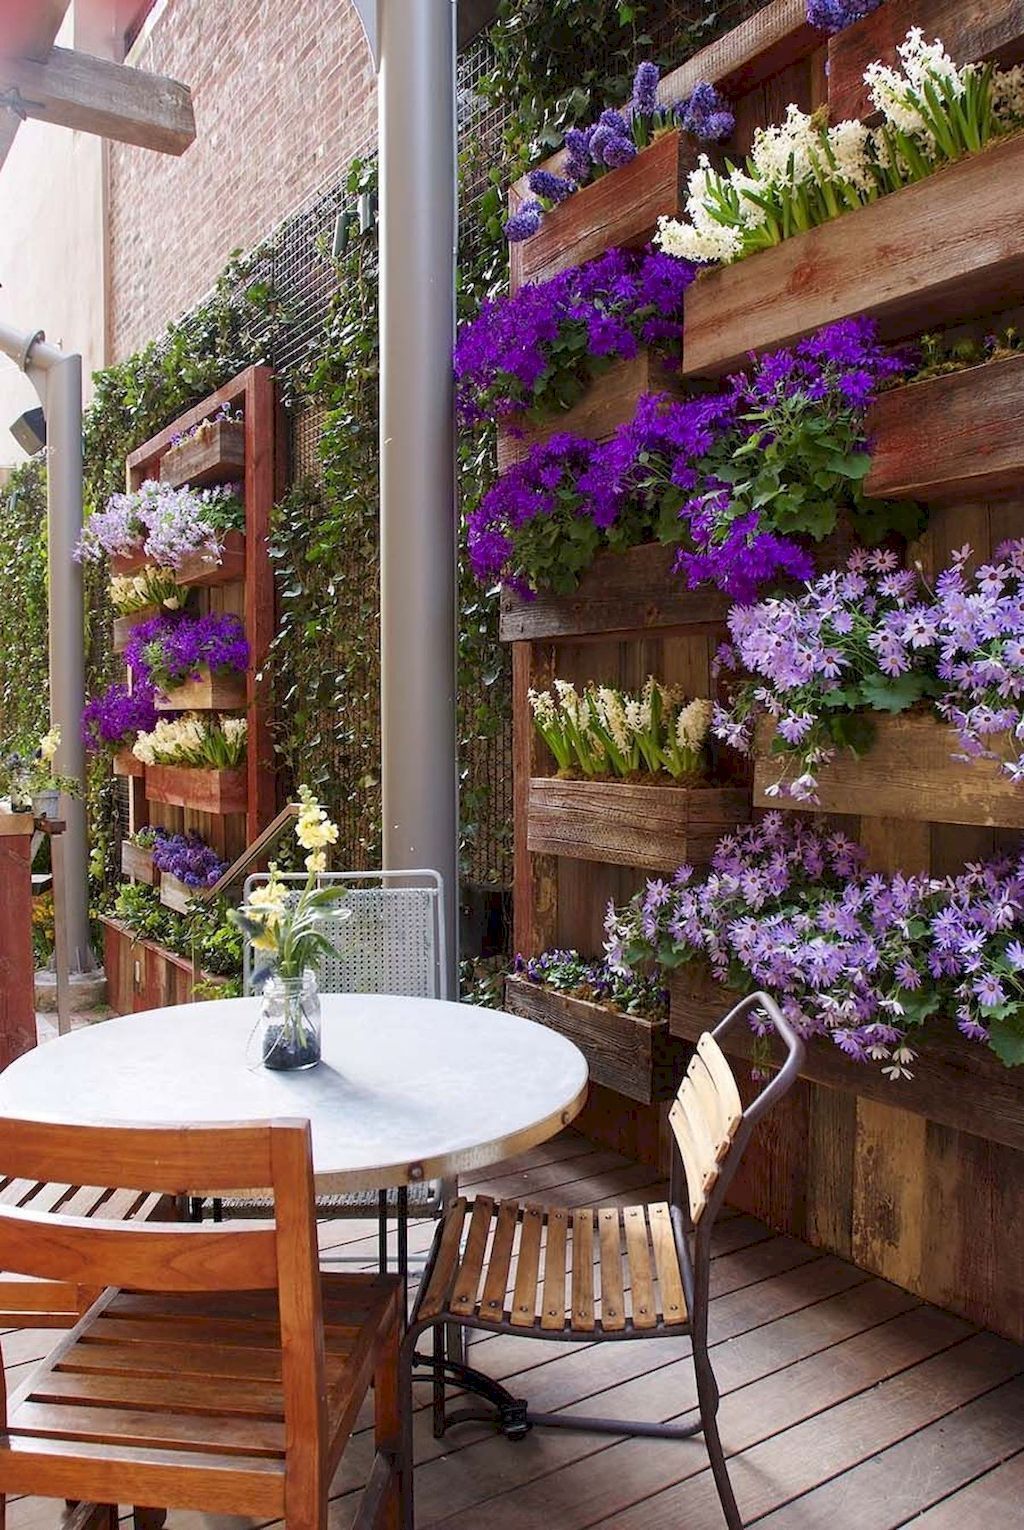 35 Awesome Vertical Garden Ideas to Inspire You -   21 garden design Wall awesome ideas